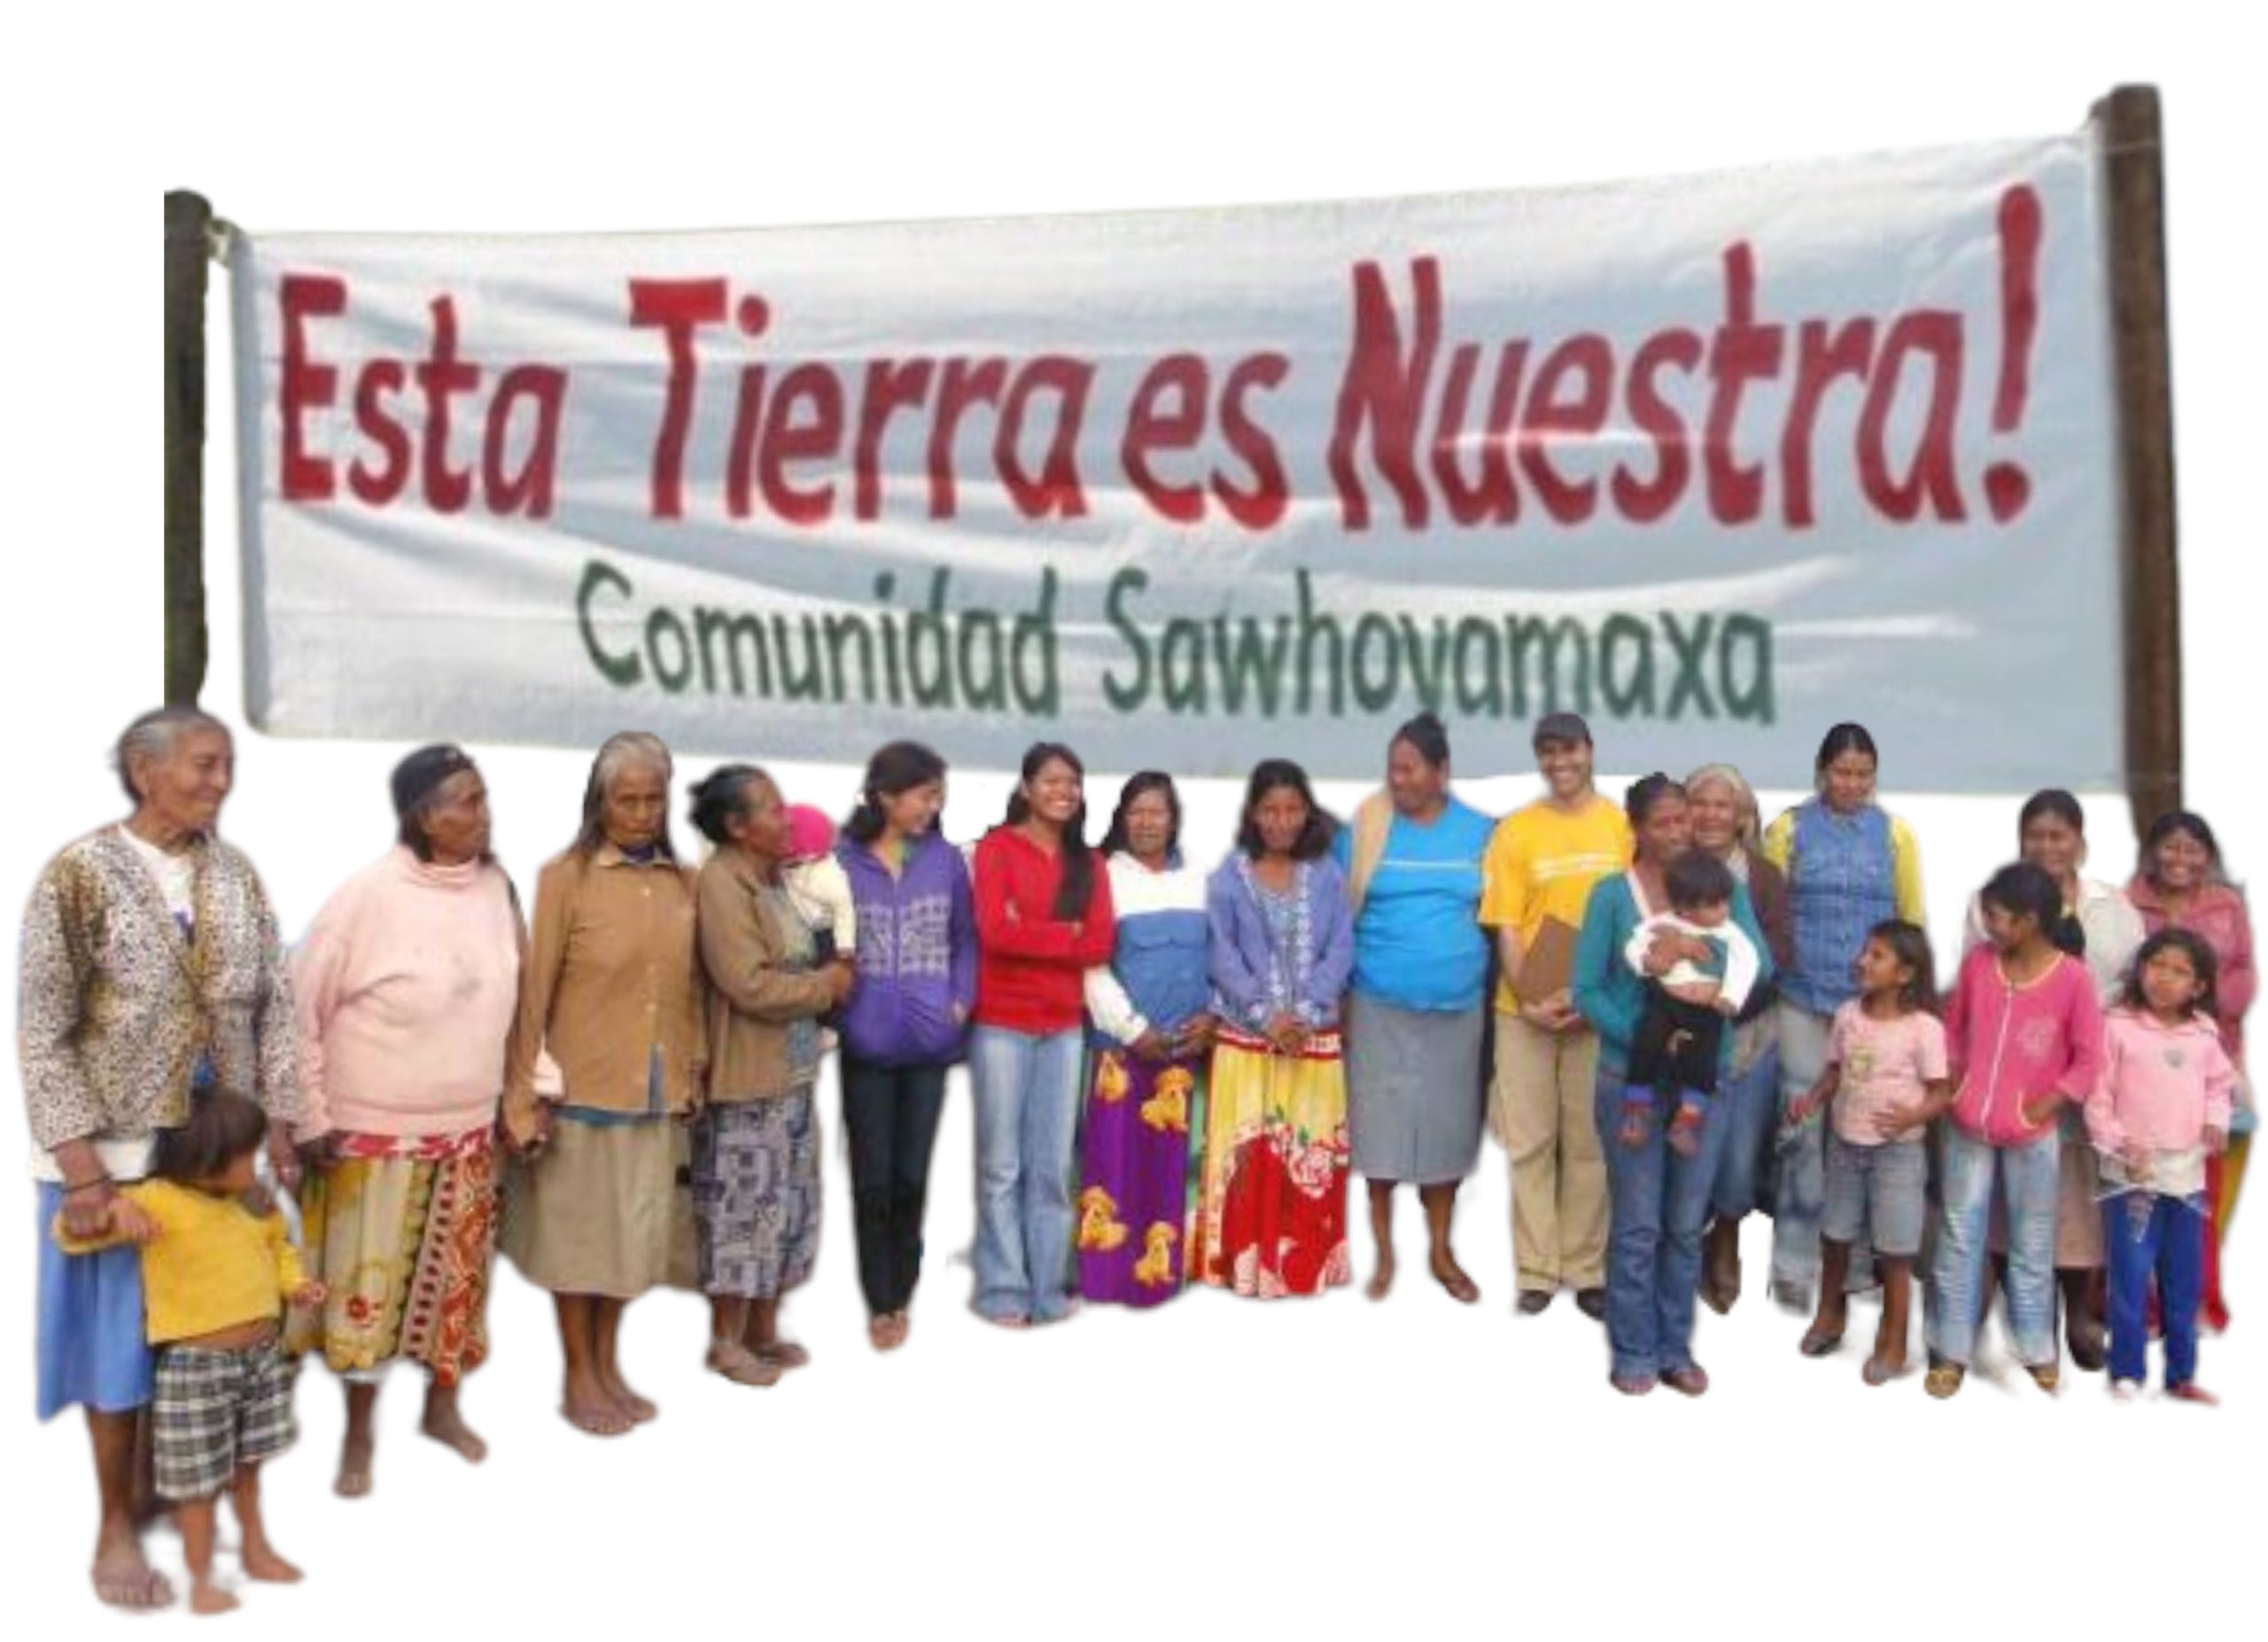 Restitución de las tierras ancestrales a la Comunidad Indígena Sawhoyamaxa